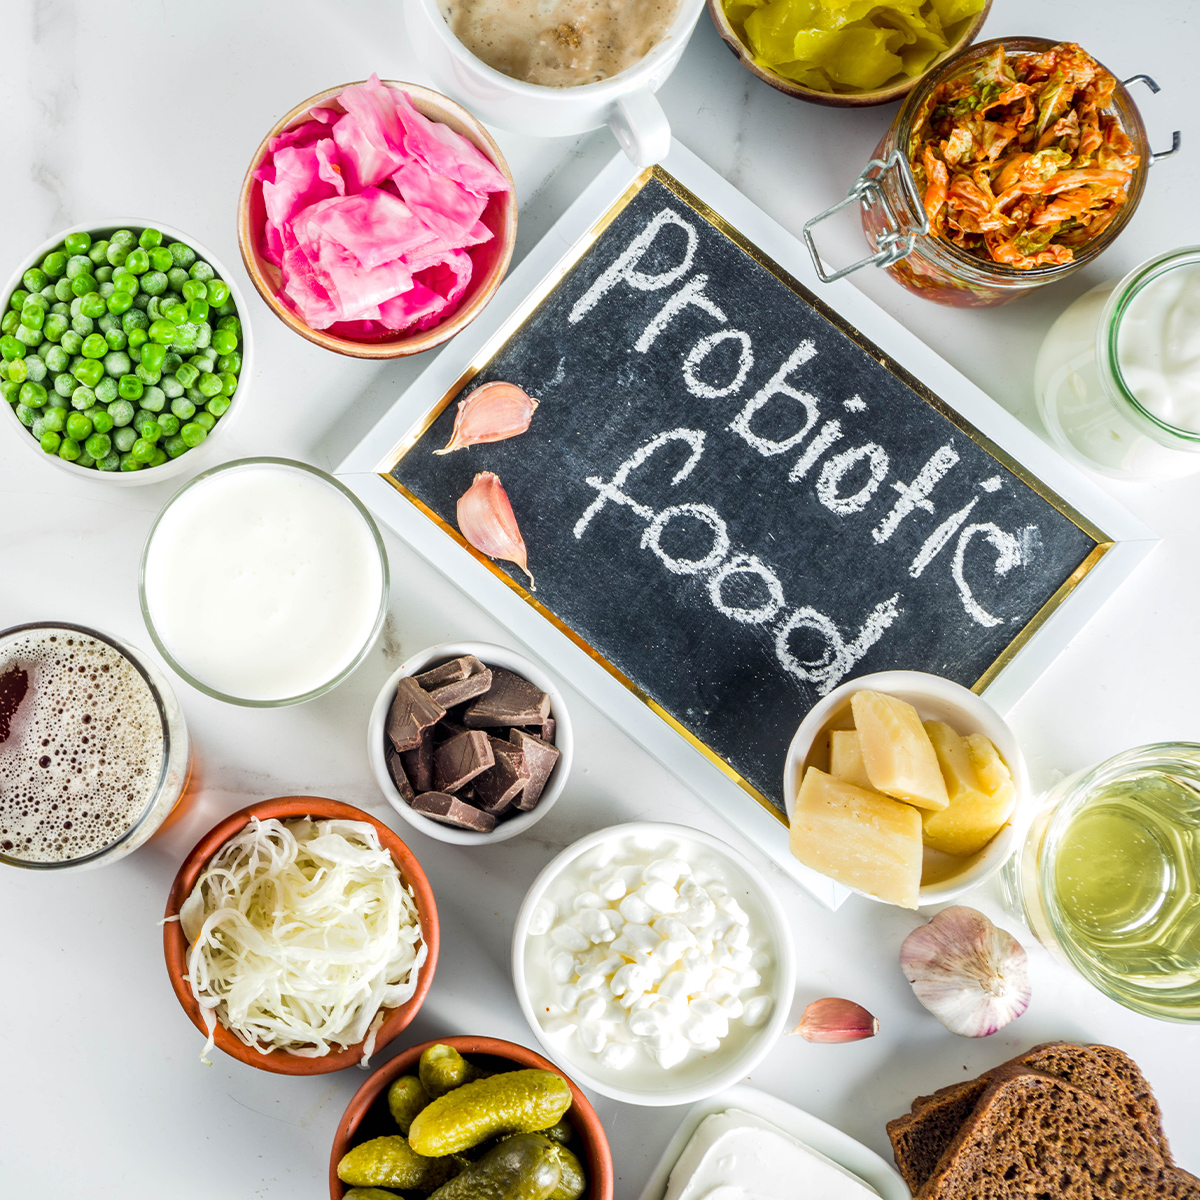 Probiotic foods